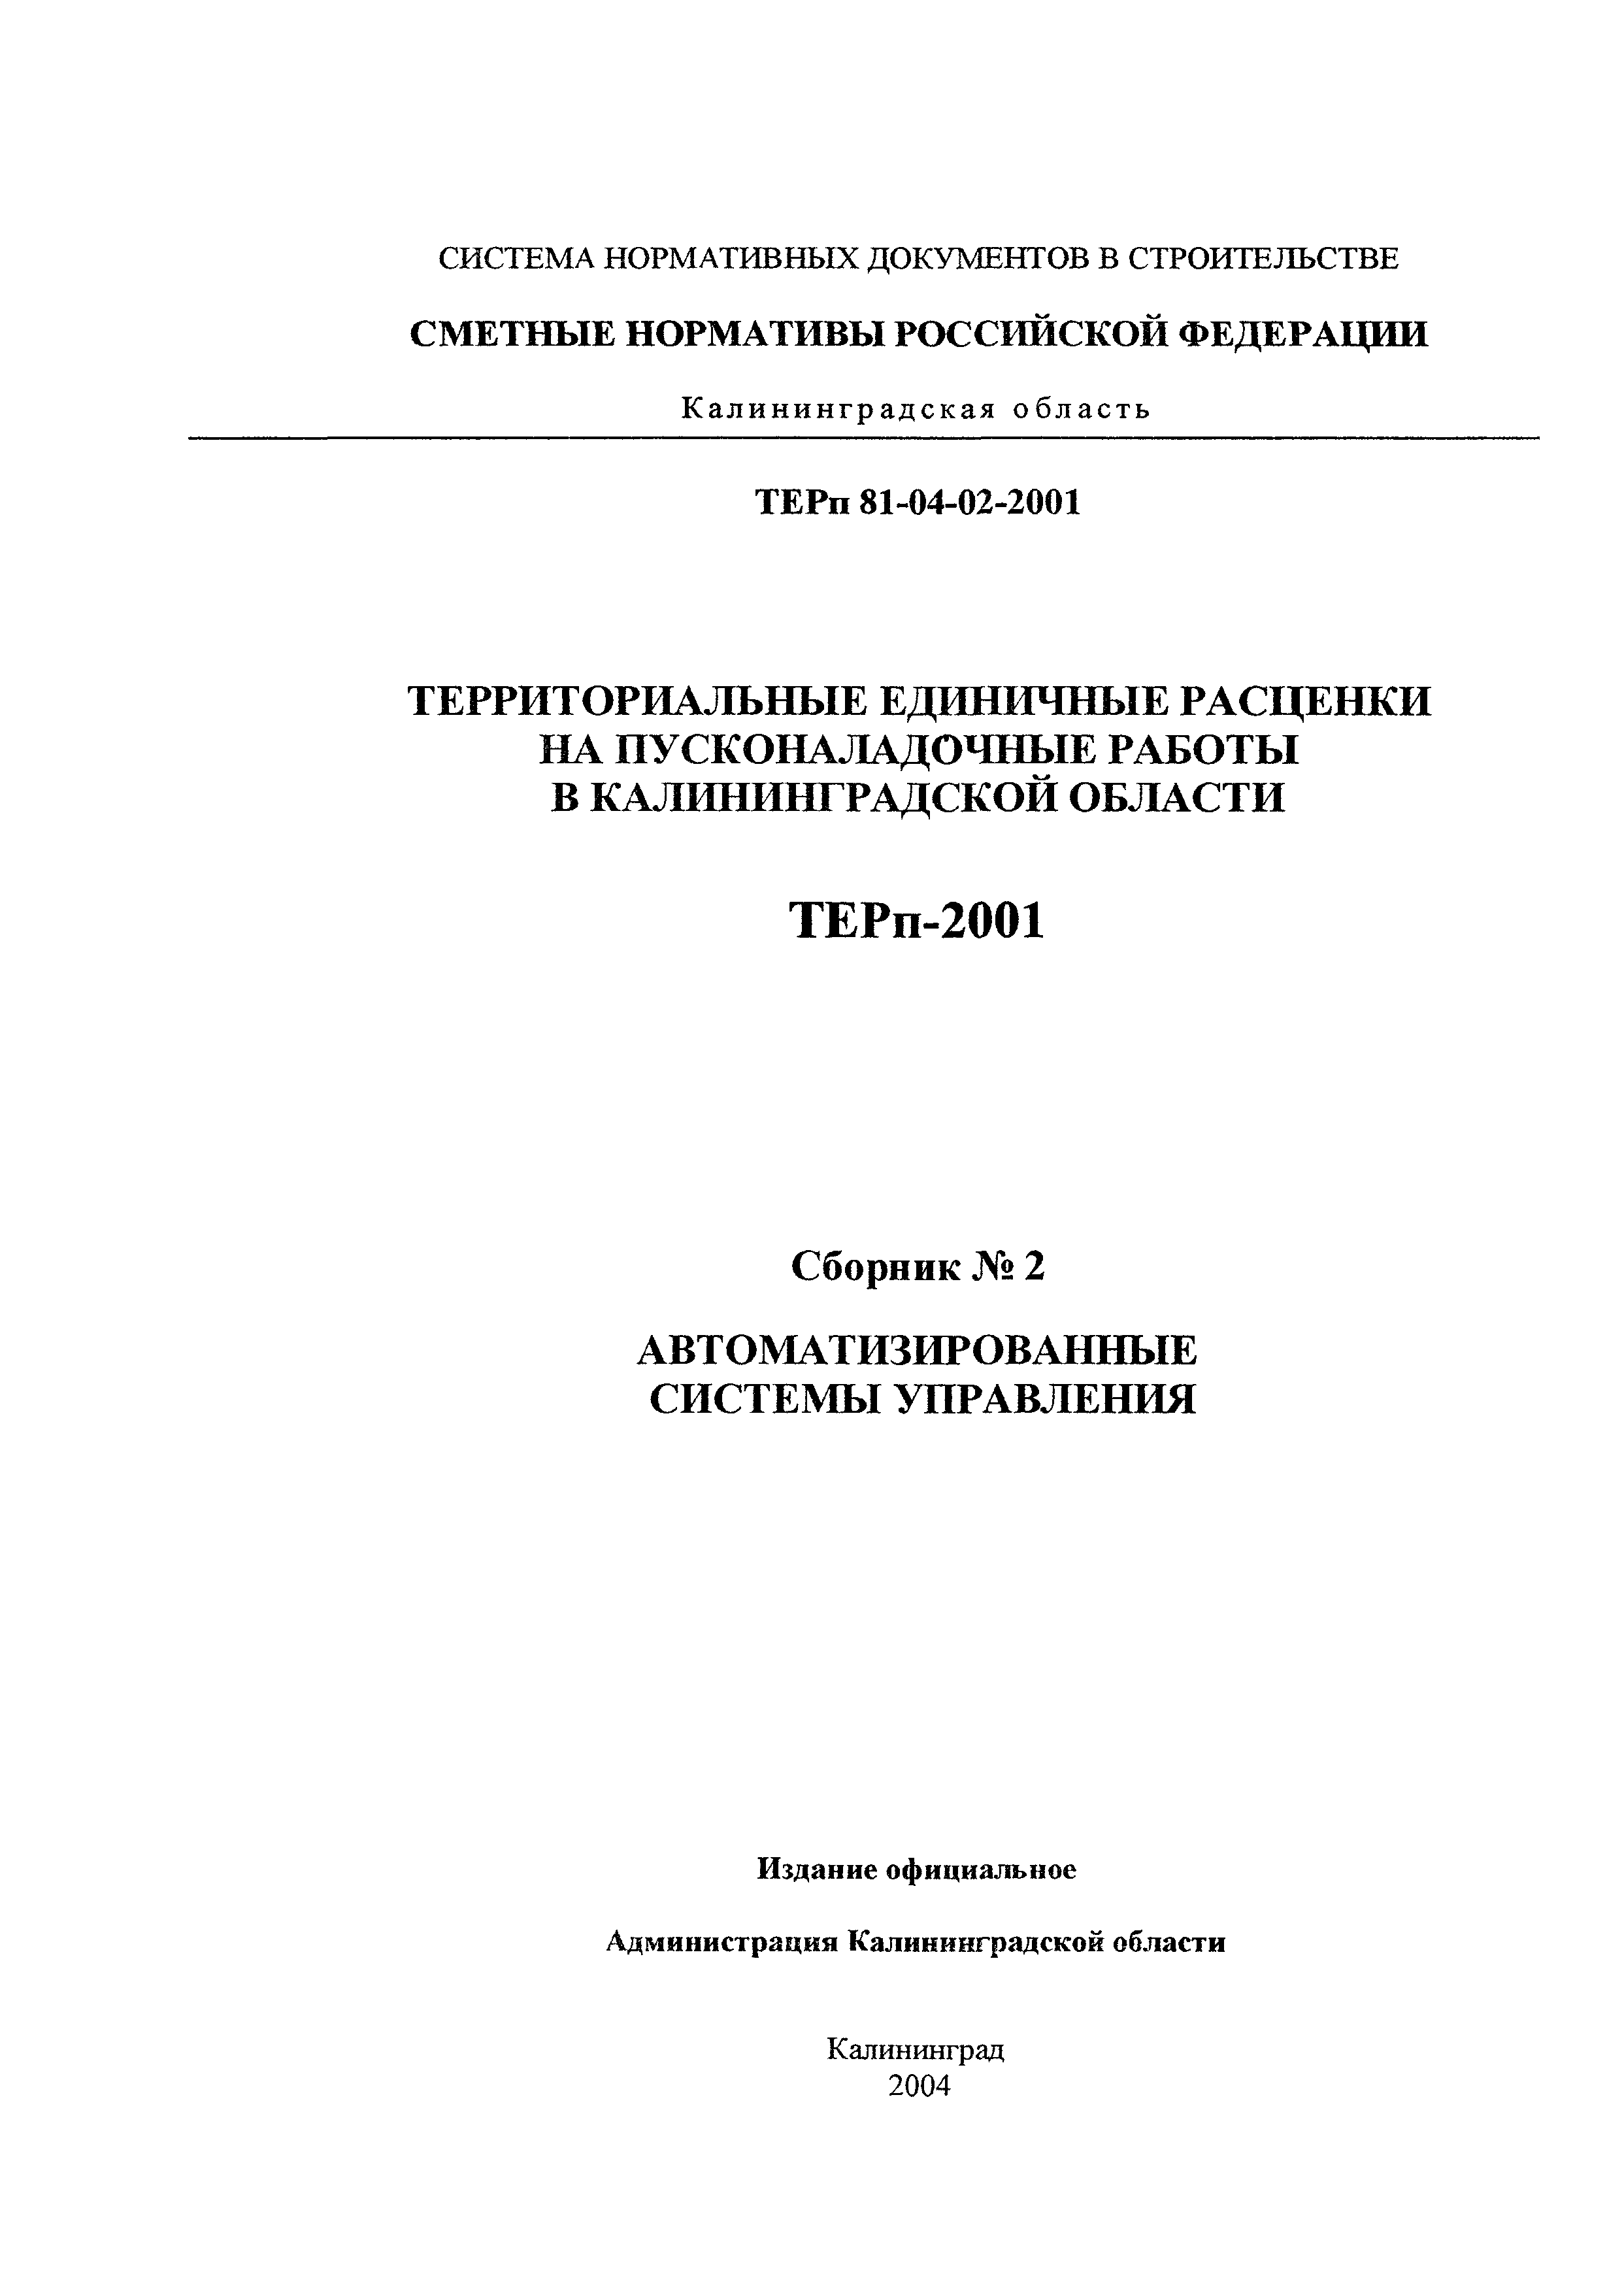 ТЕРп Калининградская область 2001-02